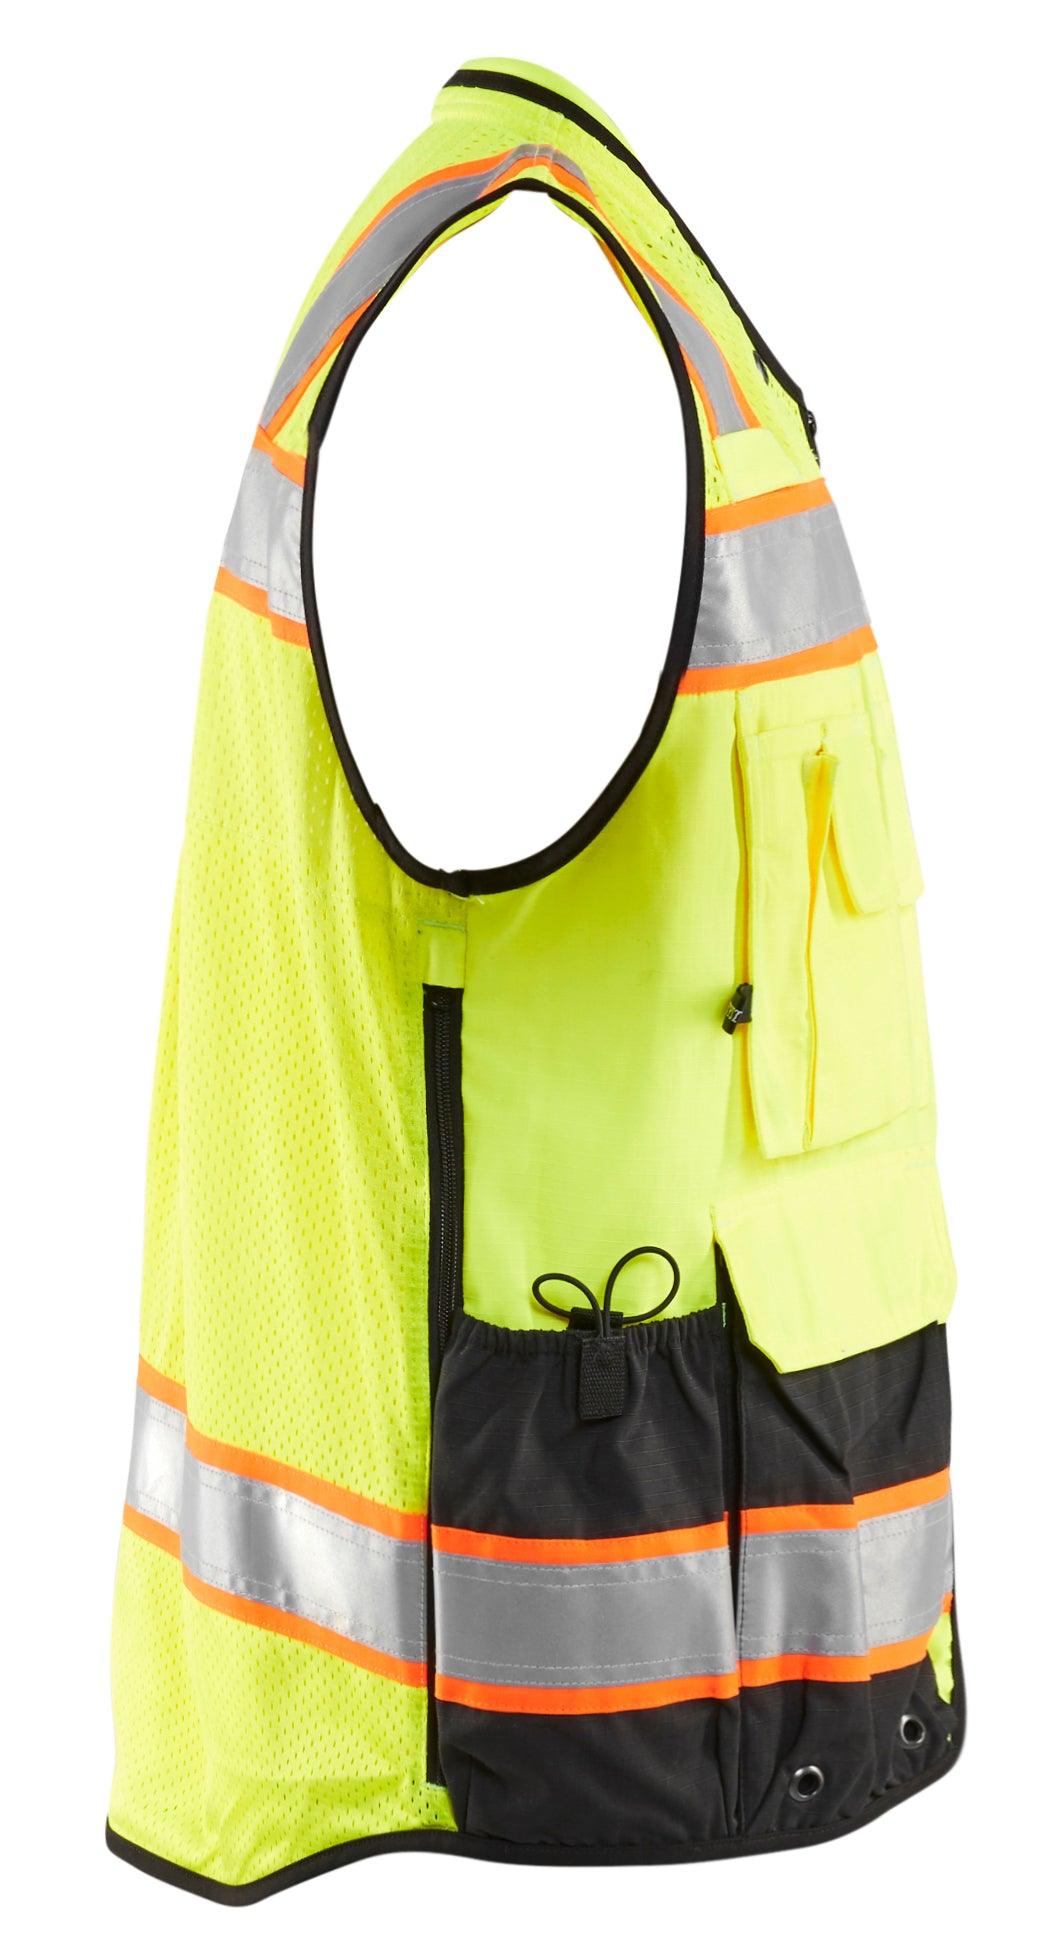 Blaklader 3132 Hi-Vis Surveyor Safety Vest - Yellow Hi-Vis/Black - Trusted Gear Company LLC